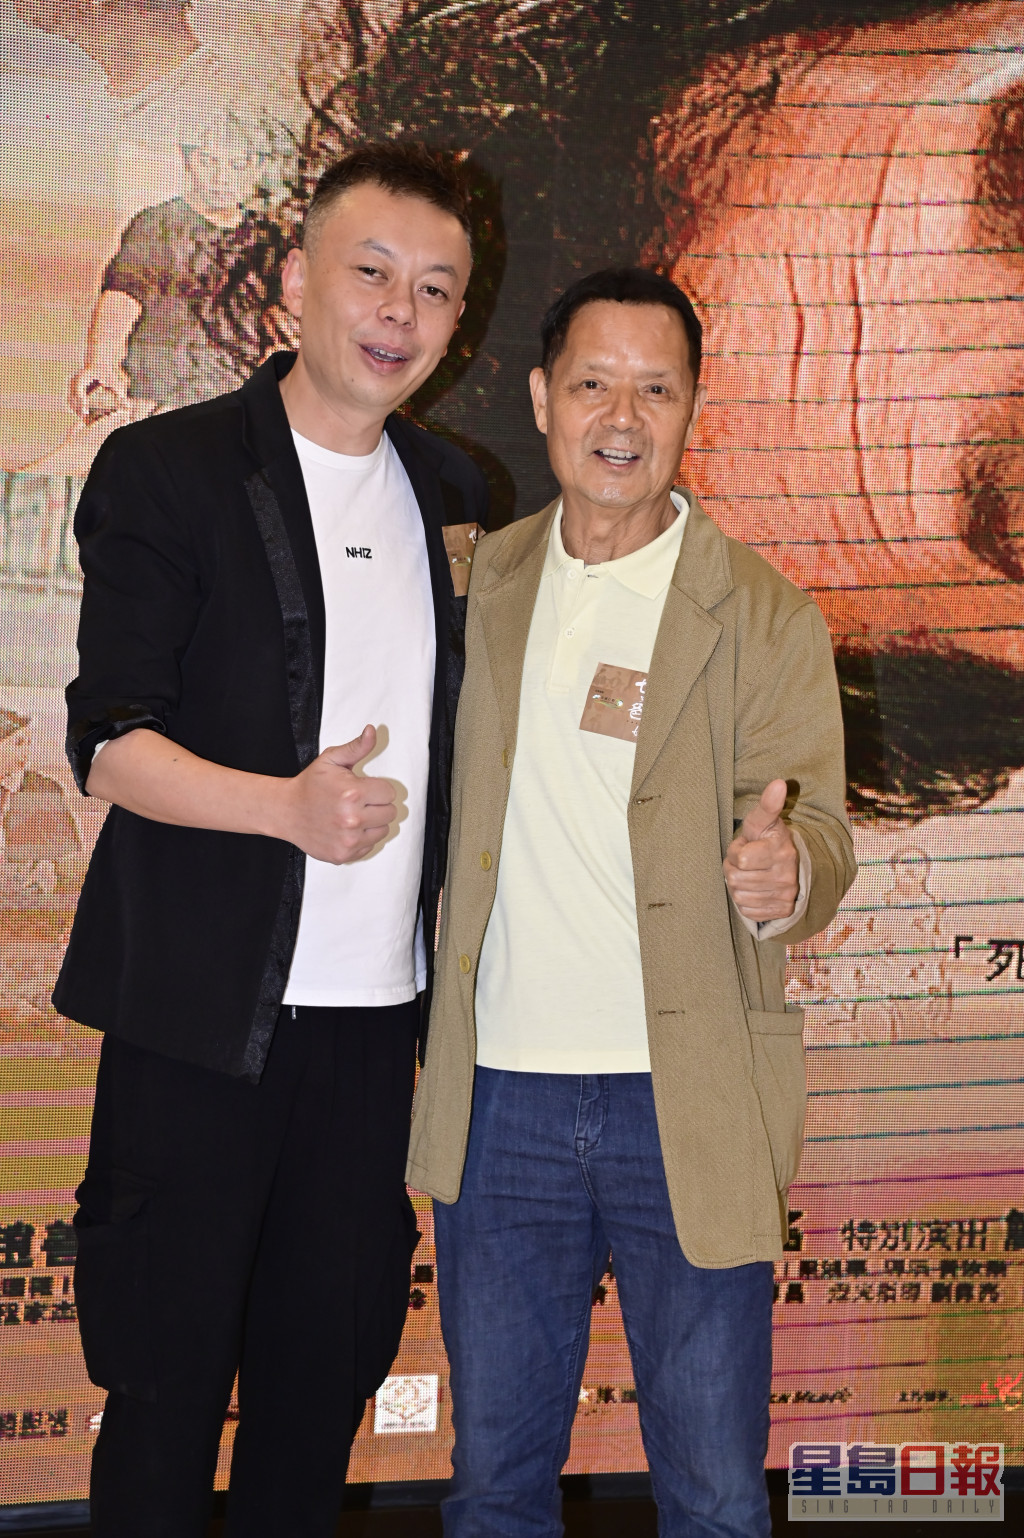 廖啓智生前主演的电影《世上只有爸爸好》今日在九展举行慈善首映礼。